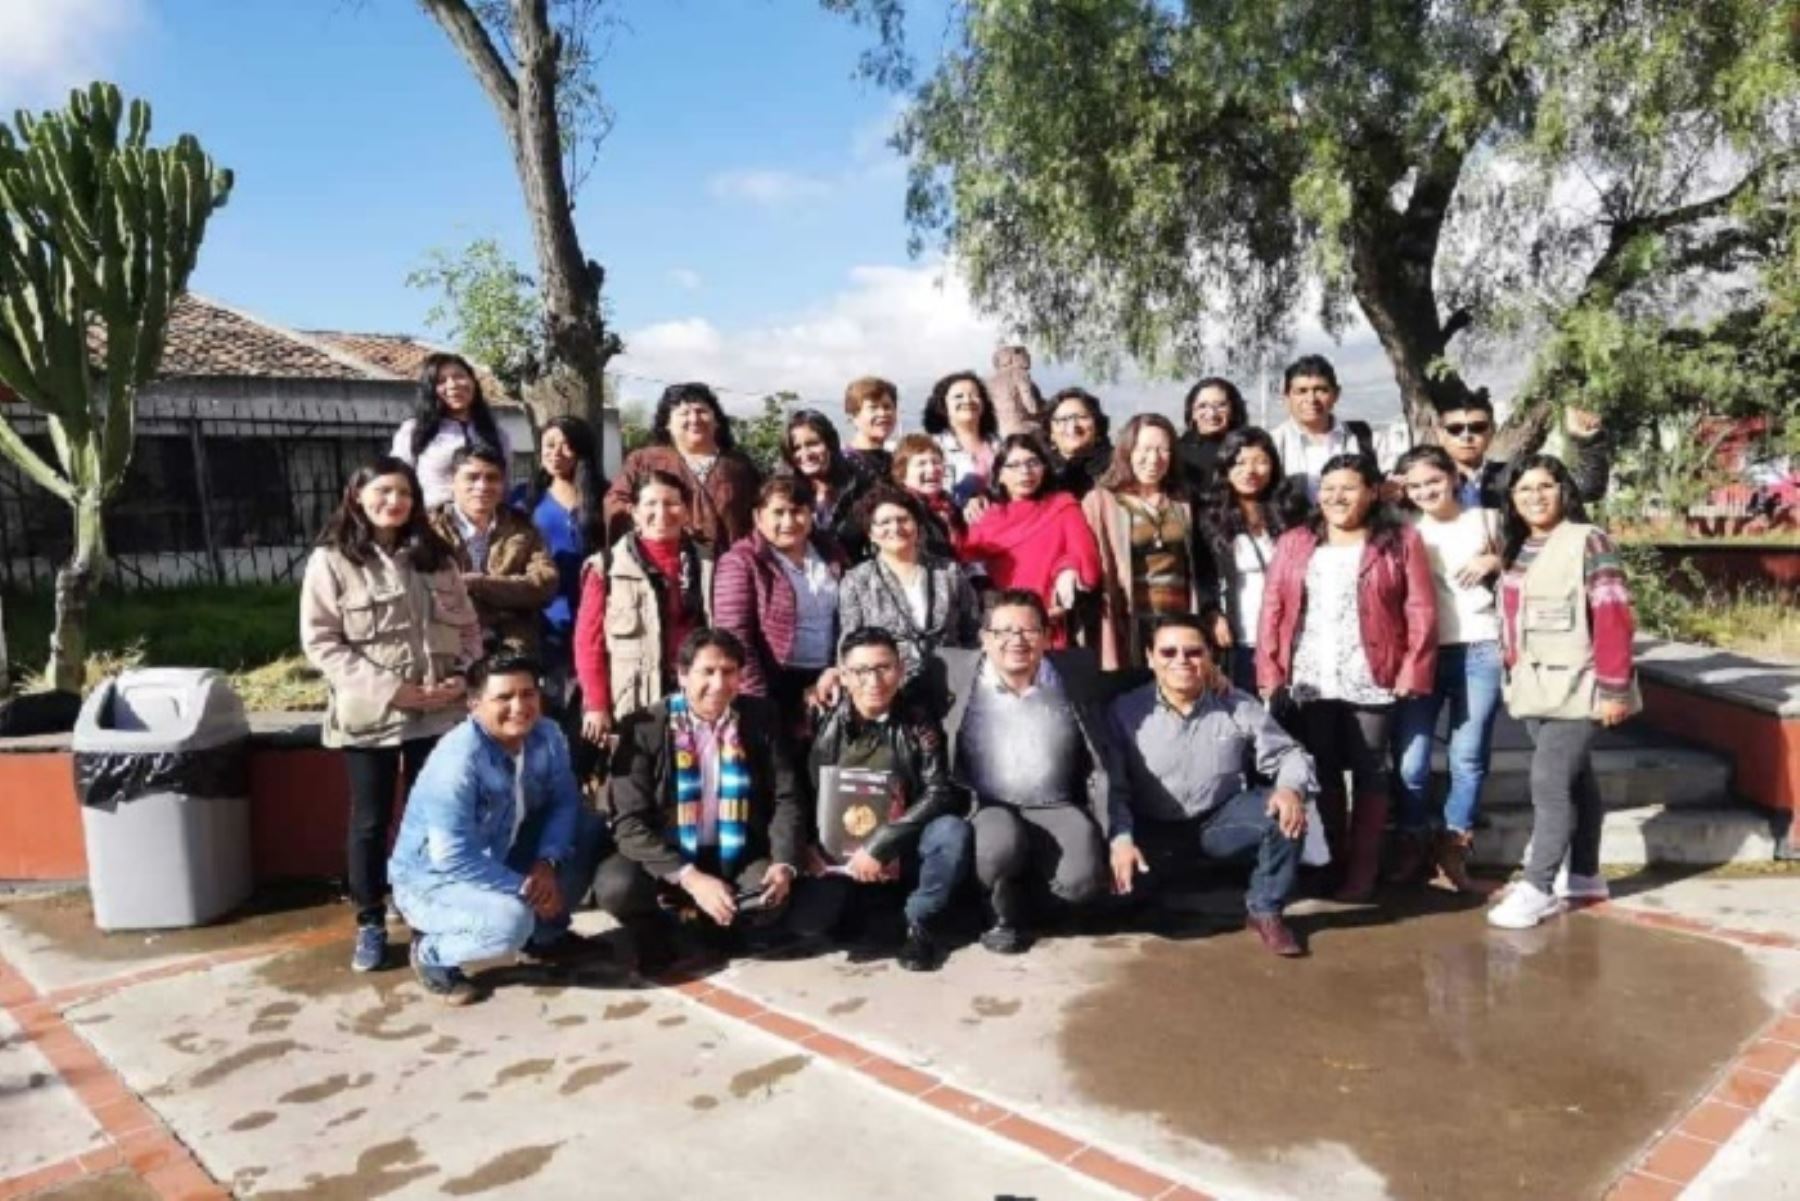 Un total de 1428 servidores bilingües, pertenecientes a 25 entidades públicas de la región Ayacucho, participaron en el proceso de evaluación de certificación de competencias en lenguas indígenas u originarias que desarrolló el Ministerio de Cultura.